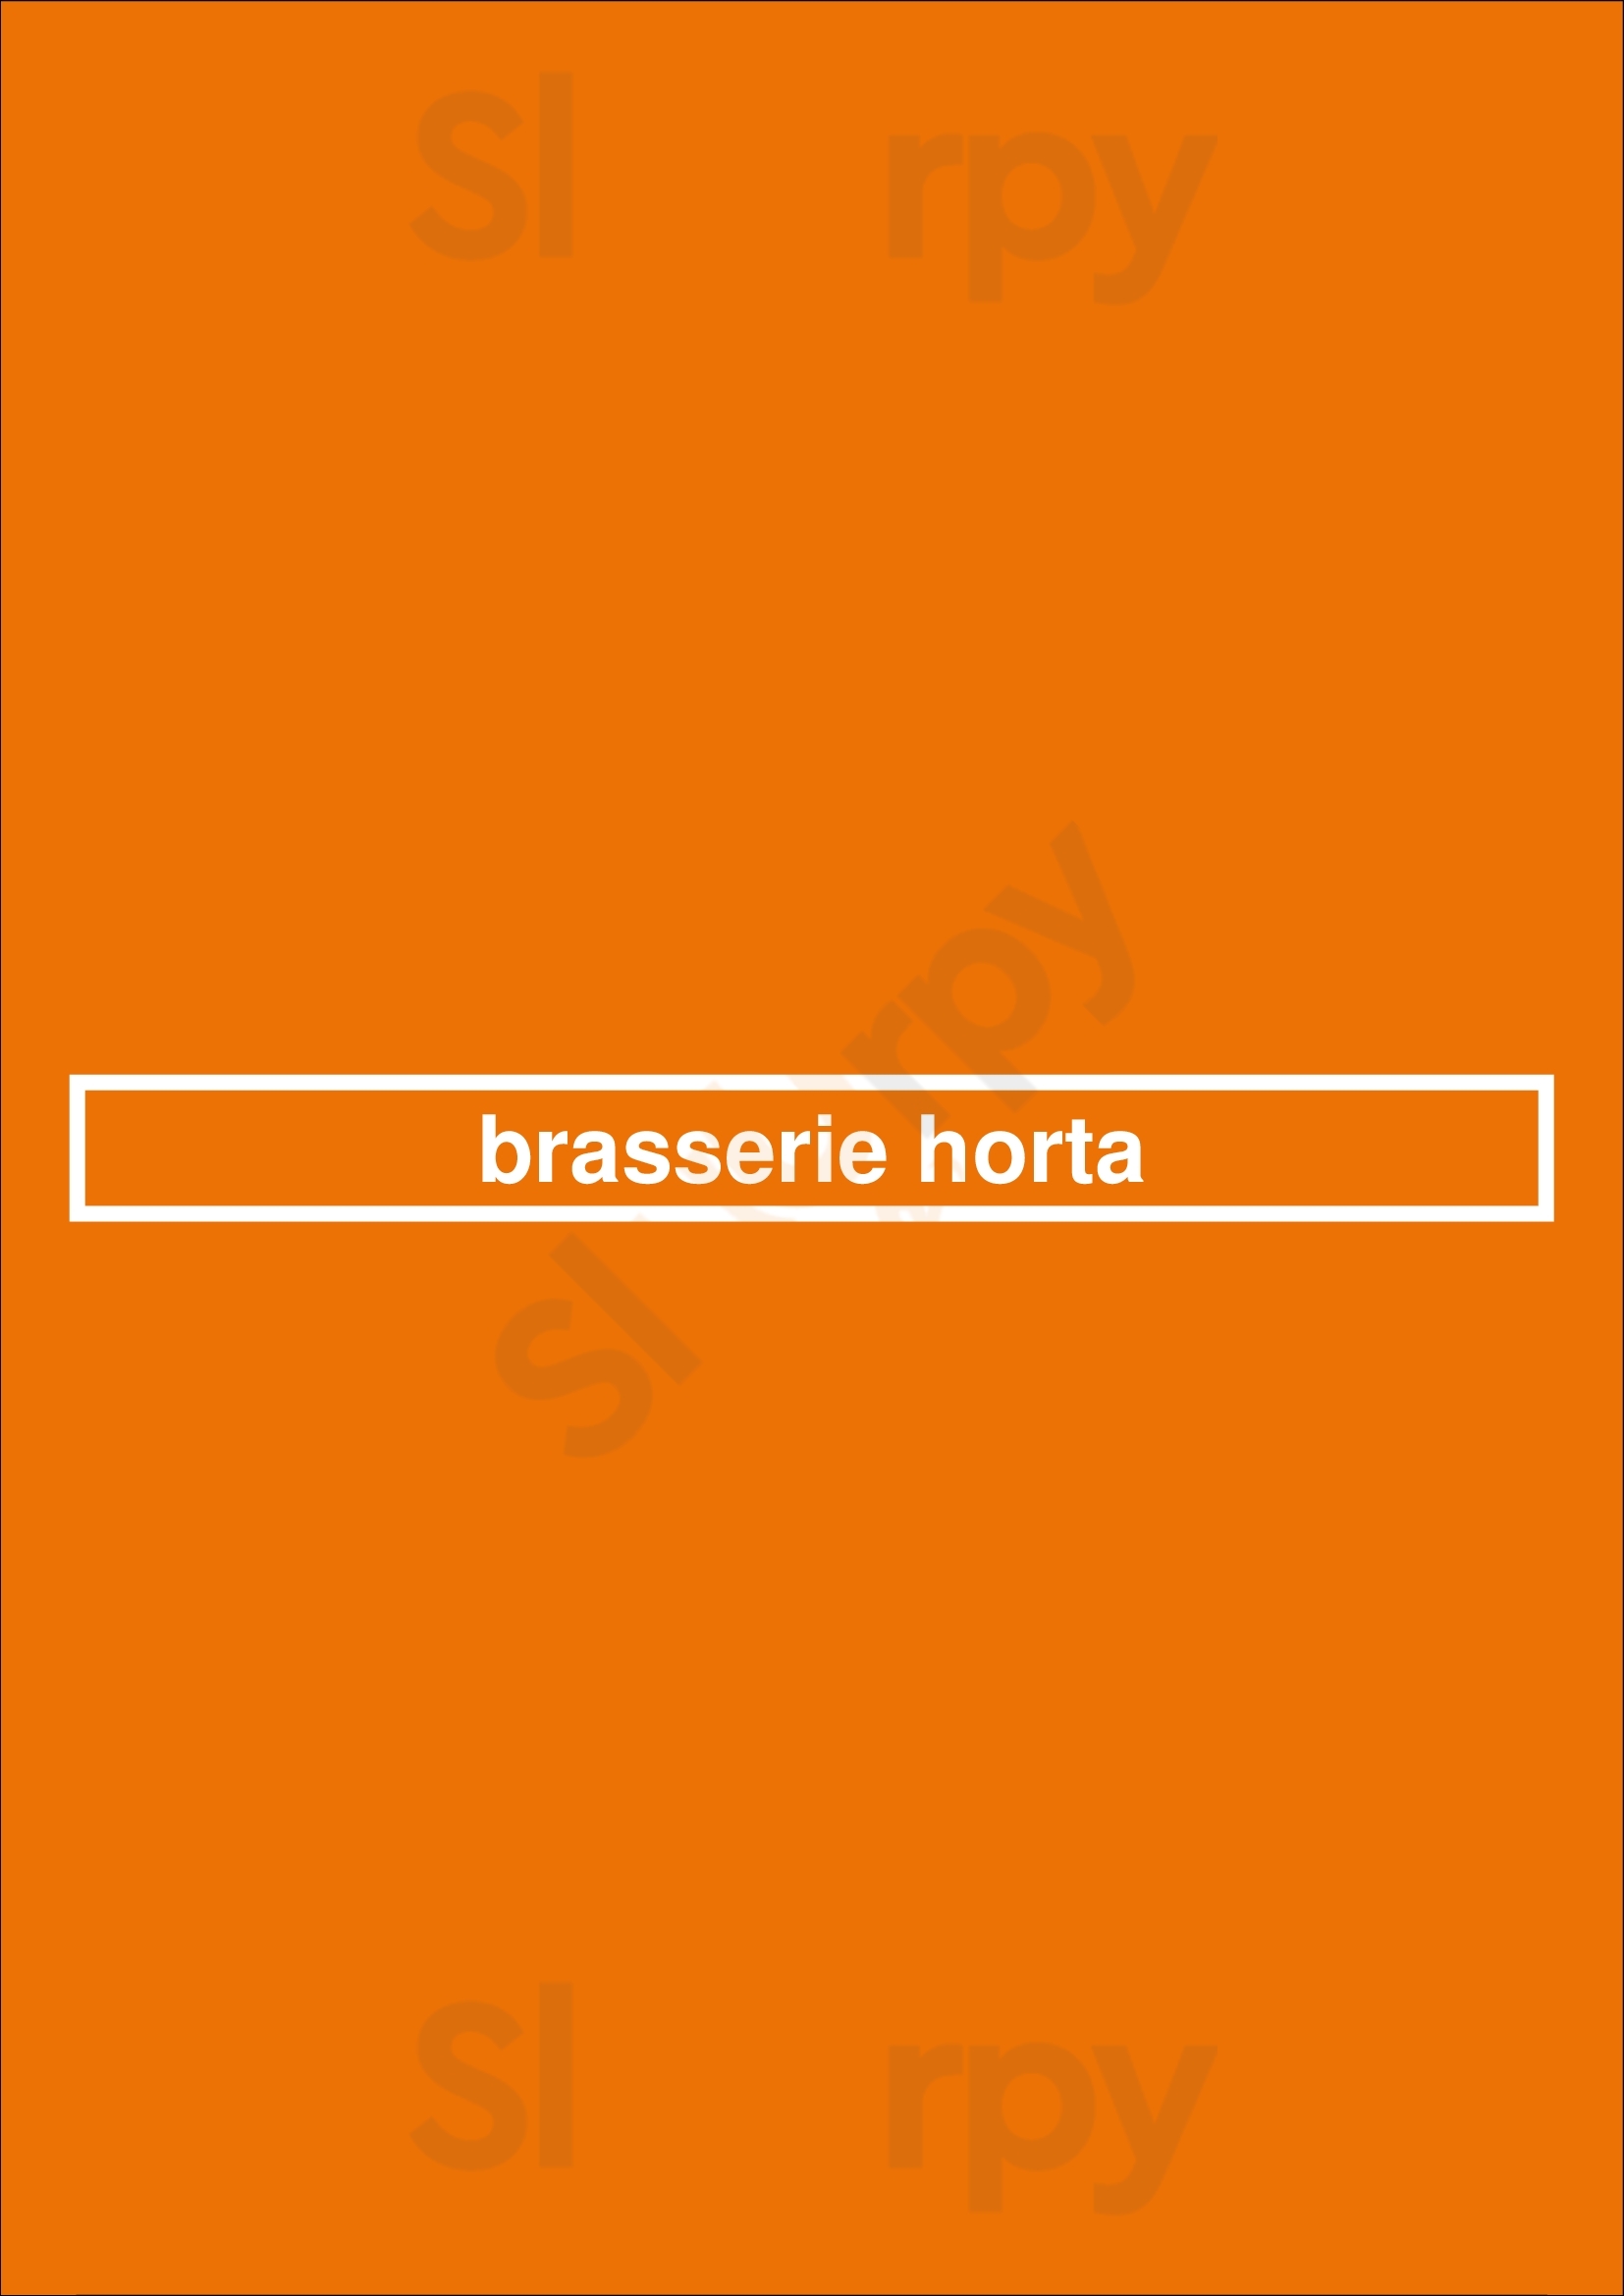 Brasserie Horta Bruxelles Menu - 1